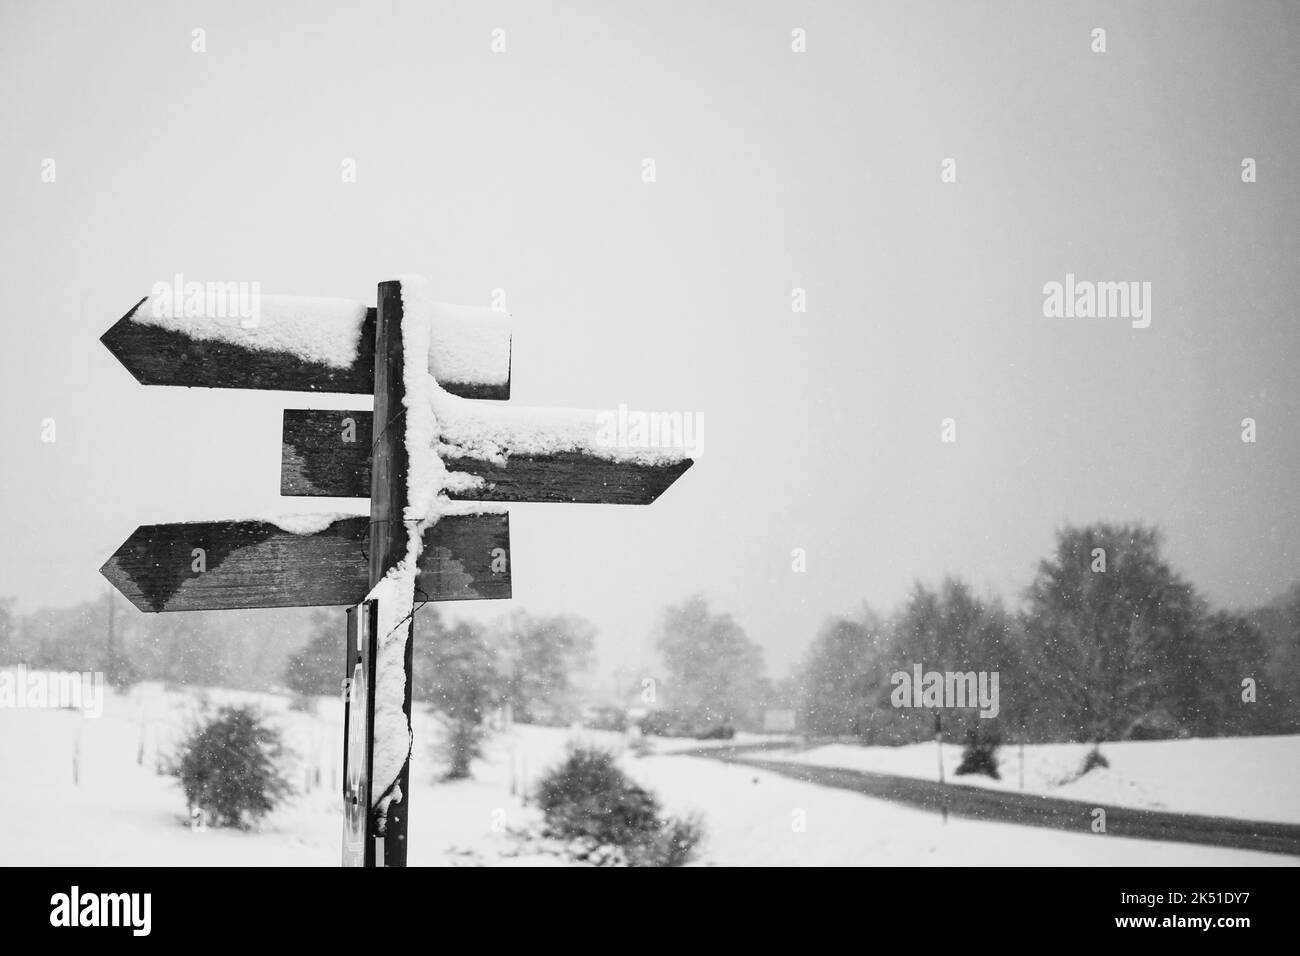 Schwarz und weiß von hölzernen Richtungs-Straßenschild auf schneebedecktem Feld gegen düsteren bewölkten Himmel in der Landschaft platziert Stockfoto